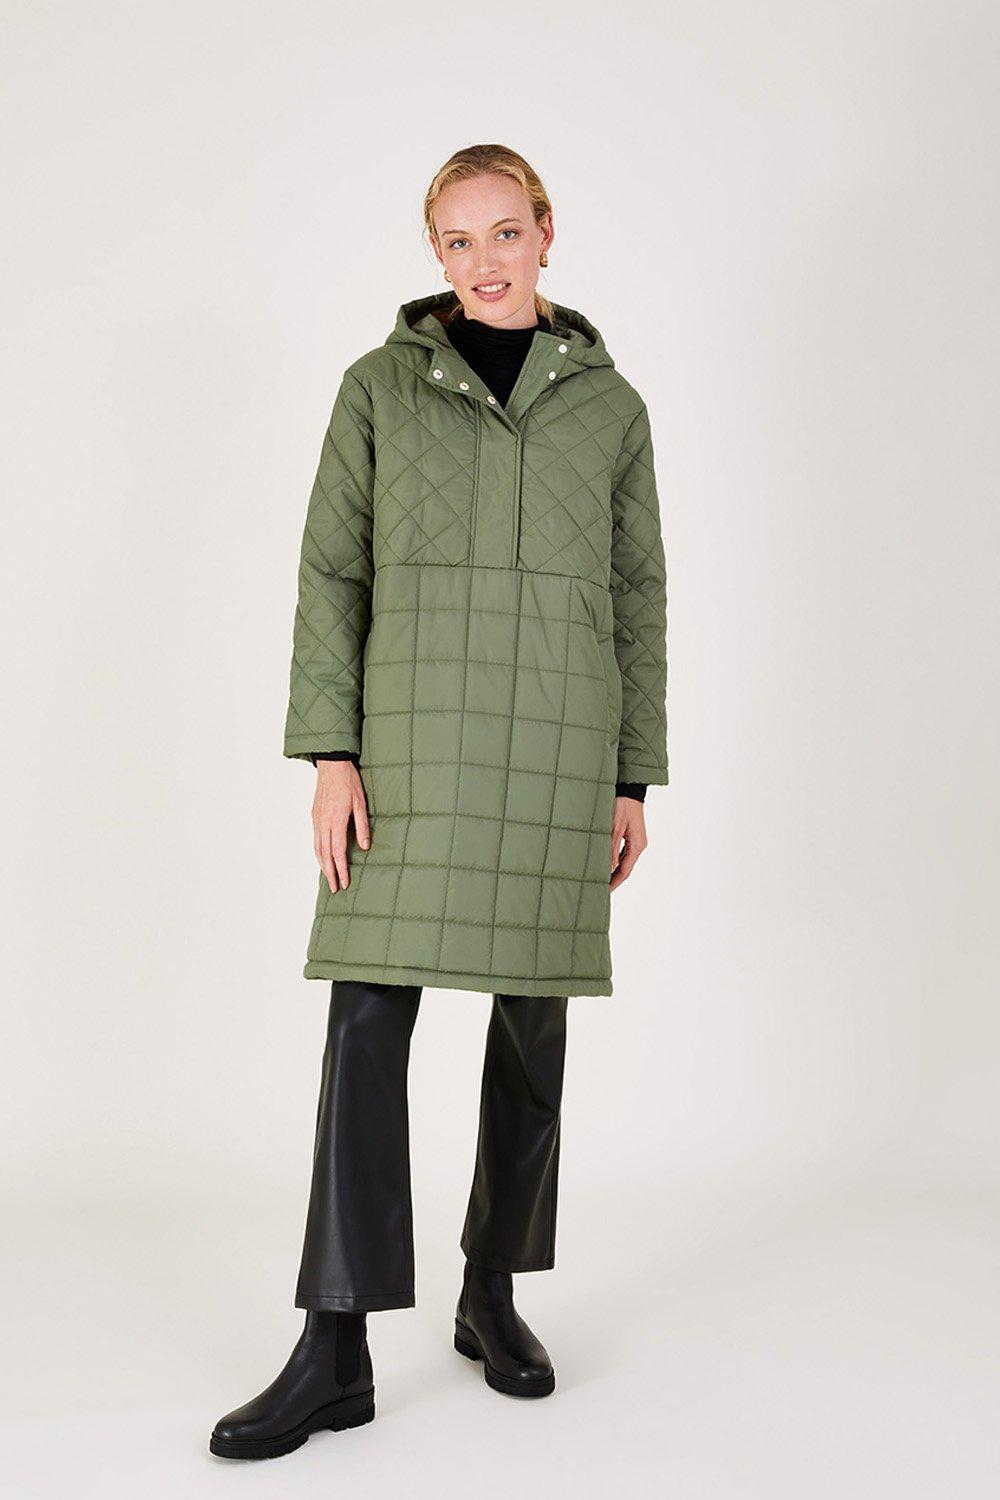 Стеганое пончо-пуловер 'Poppy' Monsoon, зеленый популярное пальто пончо на одной пуговице женское теплое свободное облегающее пончо средней длины пальто накидка пуловер пальто